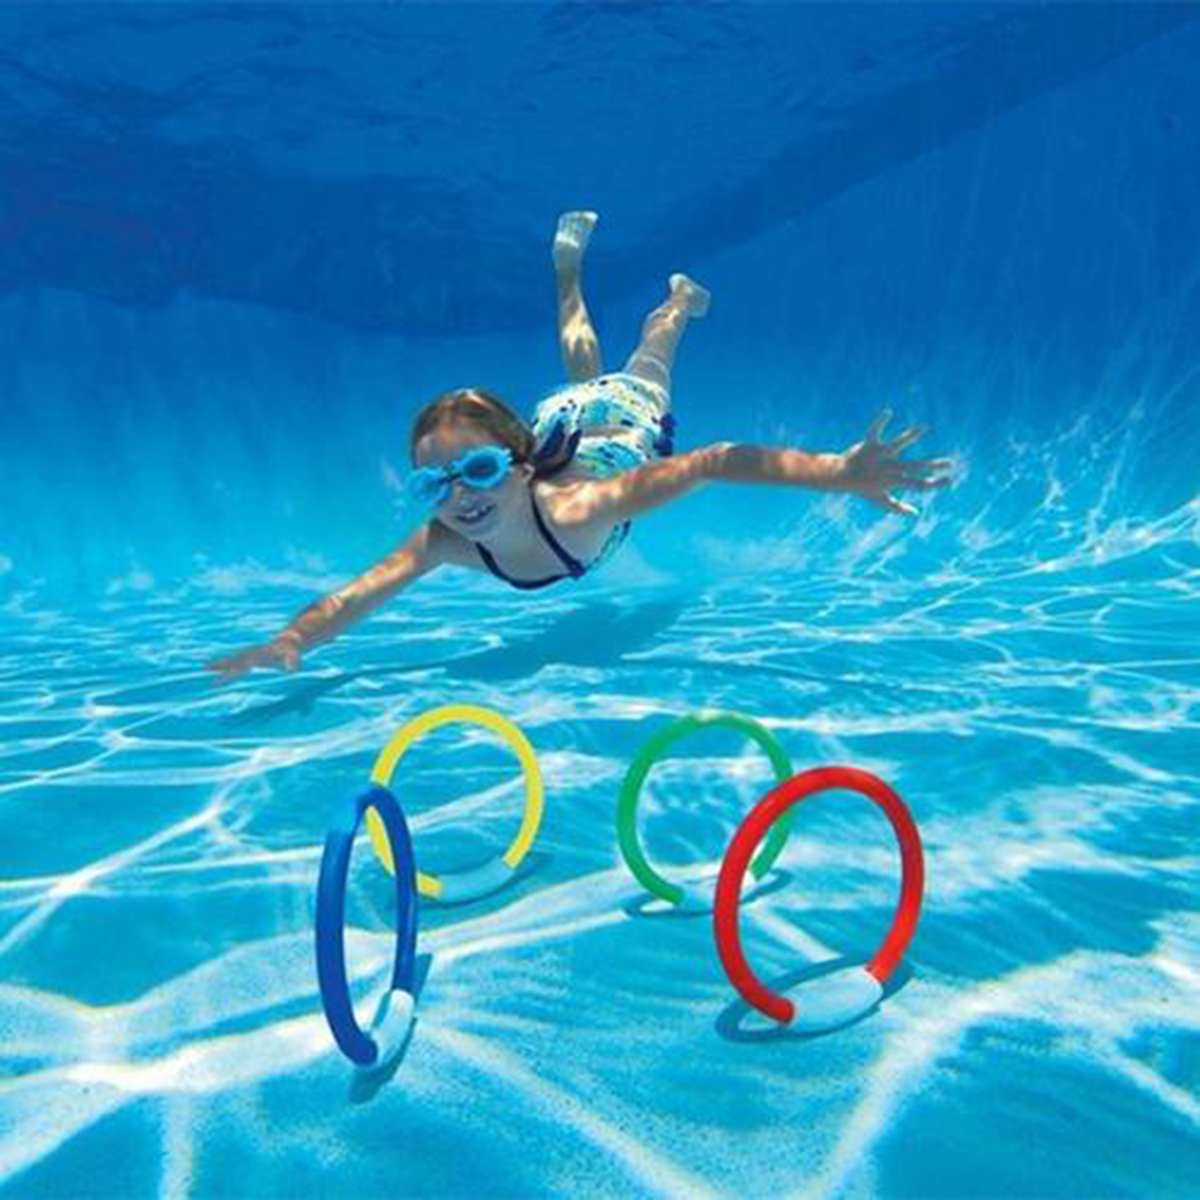 32/35 stk swimmingpoollegetøj med dykningsring tang sommerlegning vandbassin kaster dykkerspillegetøj til børn